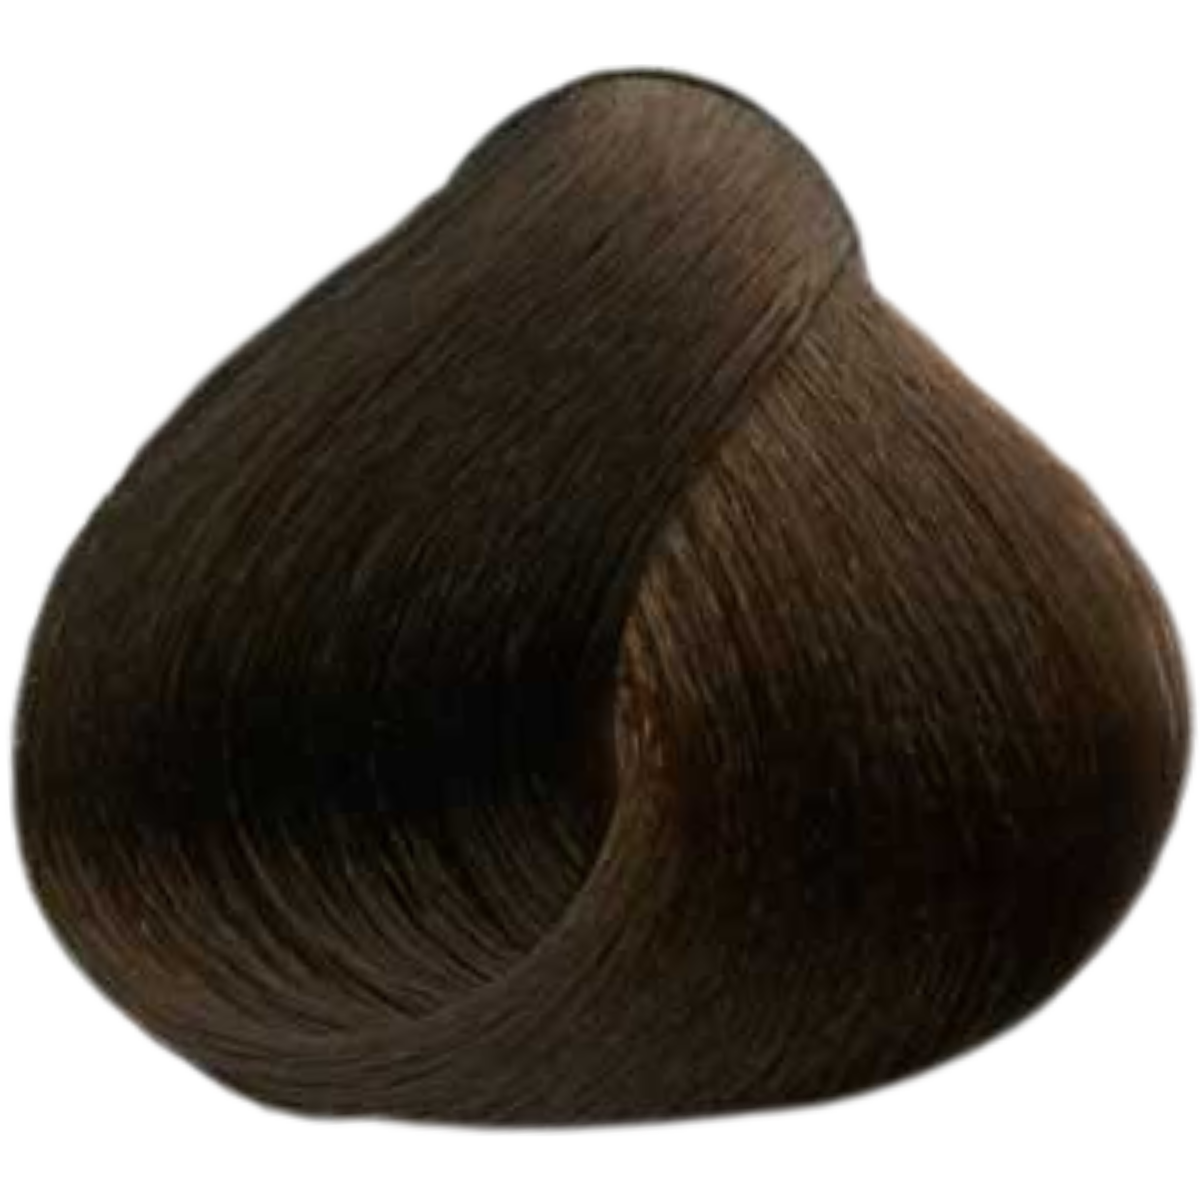 צבע שיער 7.72 MEDIUM BROWN IRIDESCENT BLONDE פארמויטה FarmaVita צבע לשיער 60 גרם